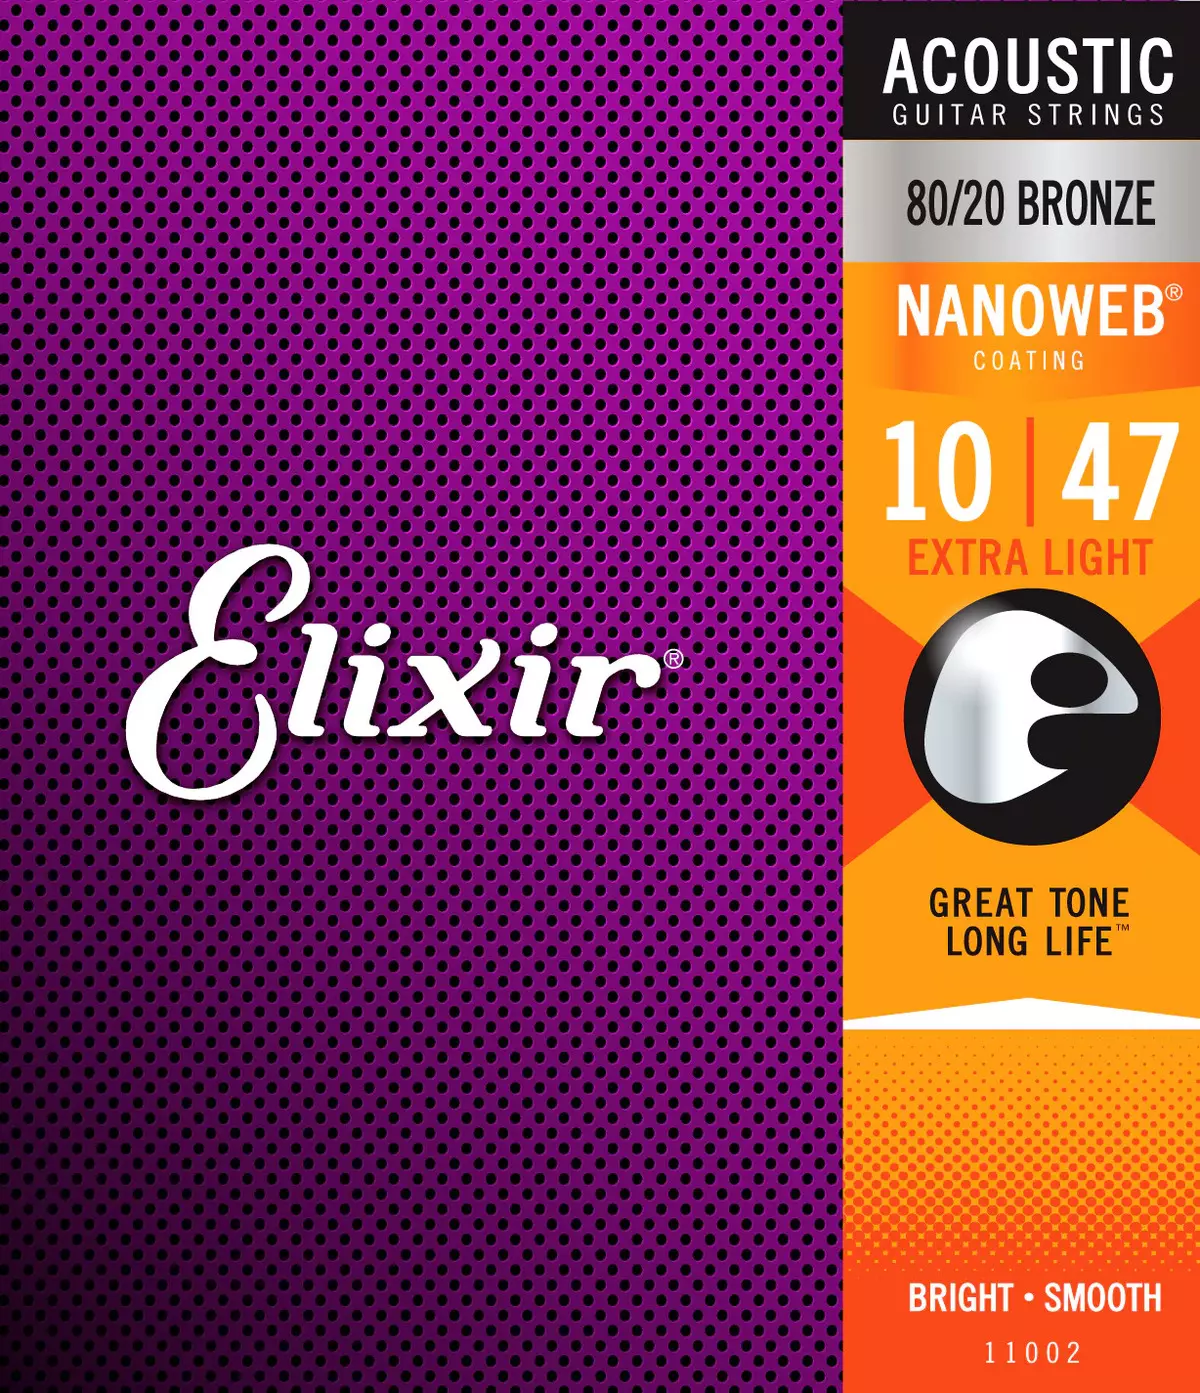 Elixir स्ट्रिंग्स: ध्वनिक गिटार और इलेक्ट्रिक गिटार, Elixir 11152 के लिए, 12/53 कैलिबर और अन्य के साथ। गिटार के लिए क्या चुनना है? 25473_4